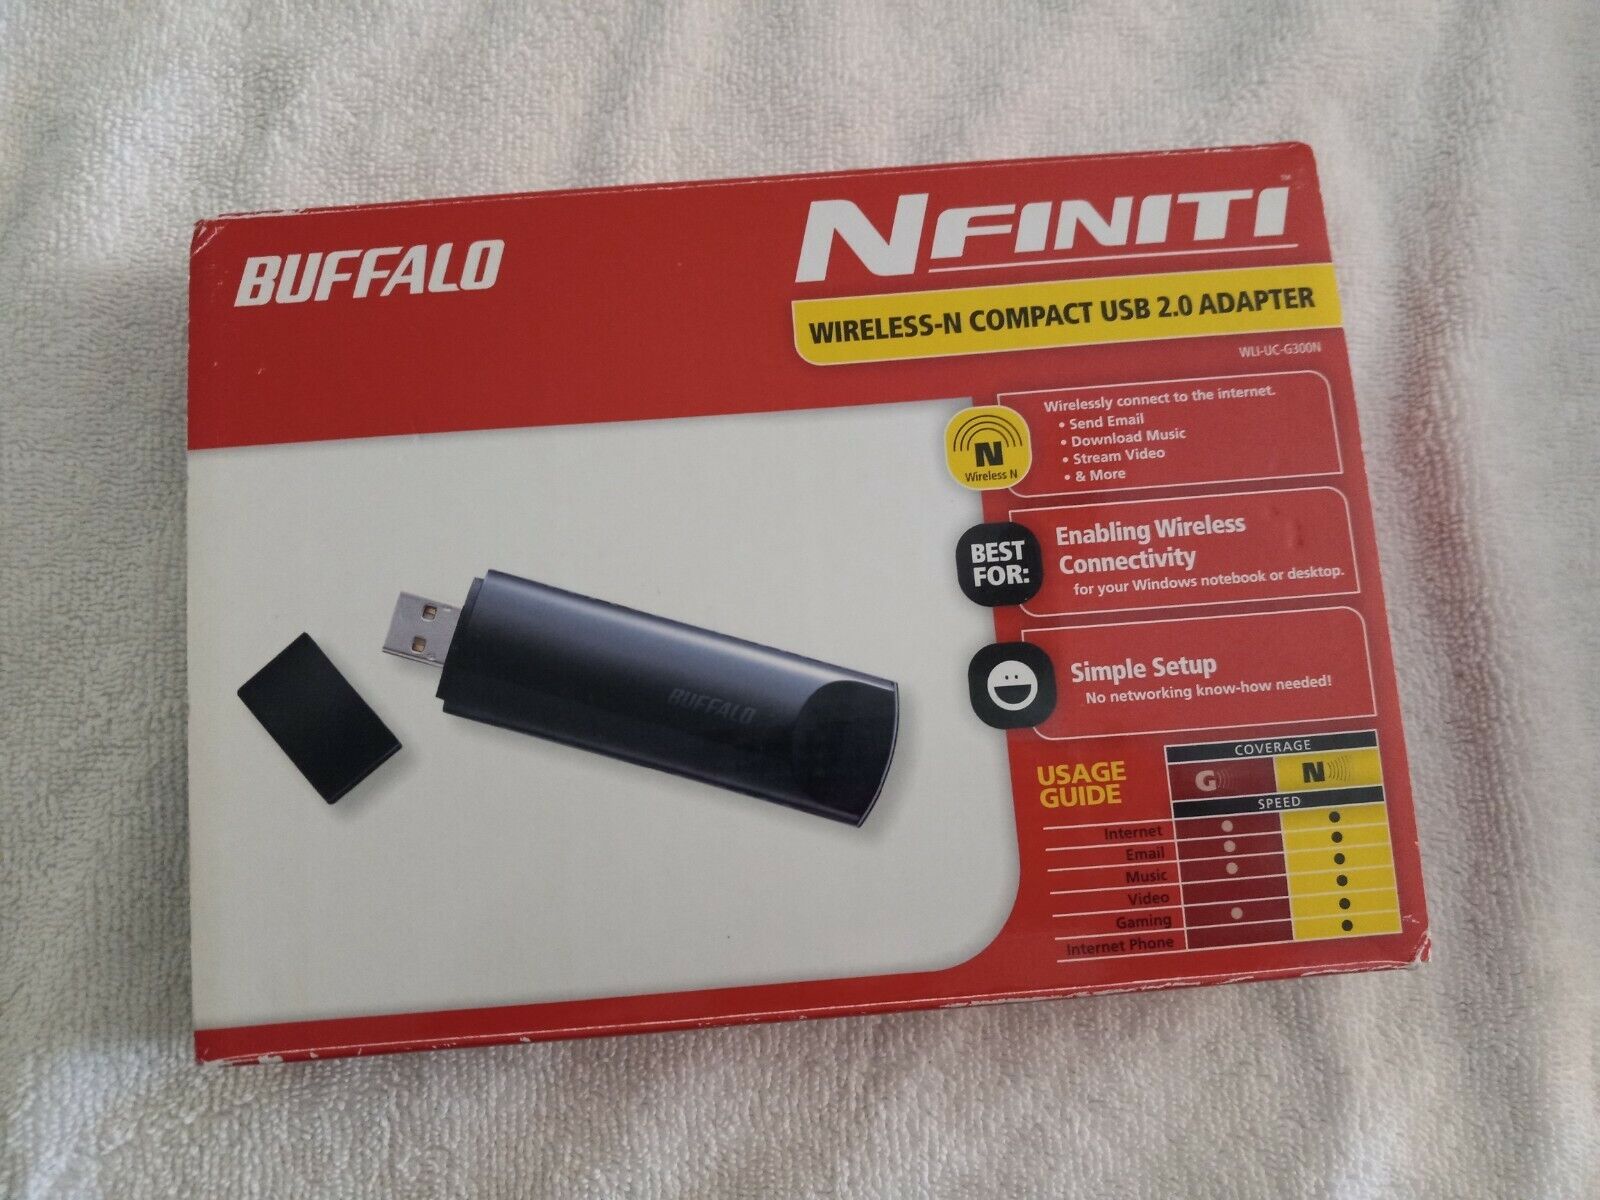 BUFFALO NFINITI, WIRELESS-N COMPACT USB 2.0 ADAPTER 